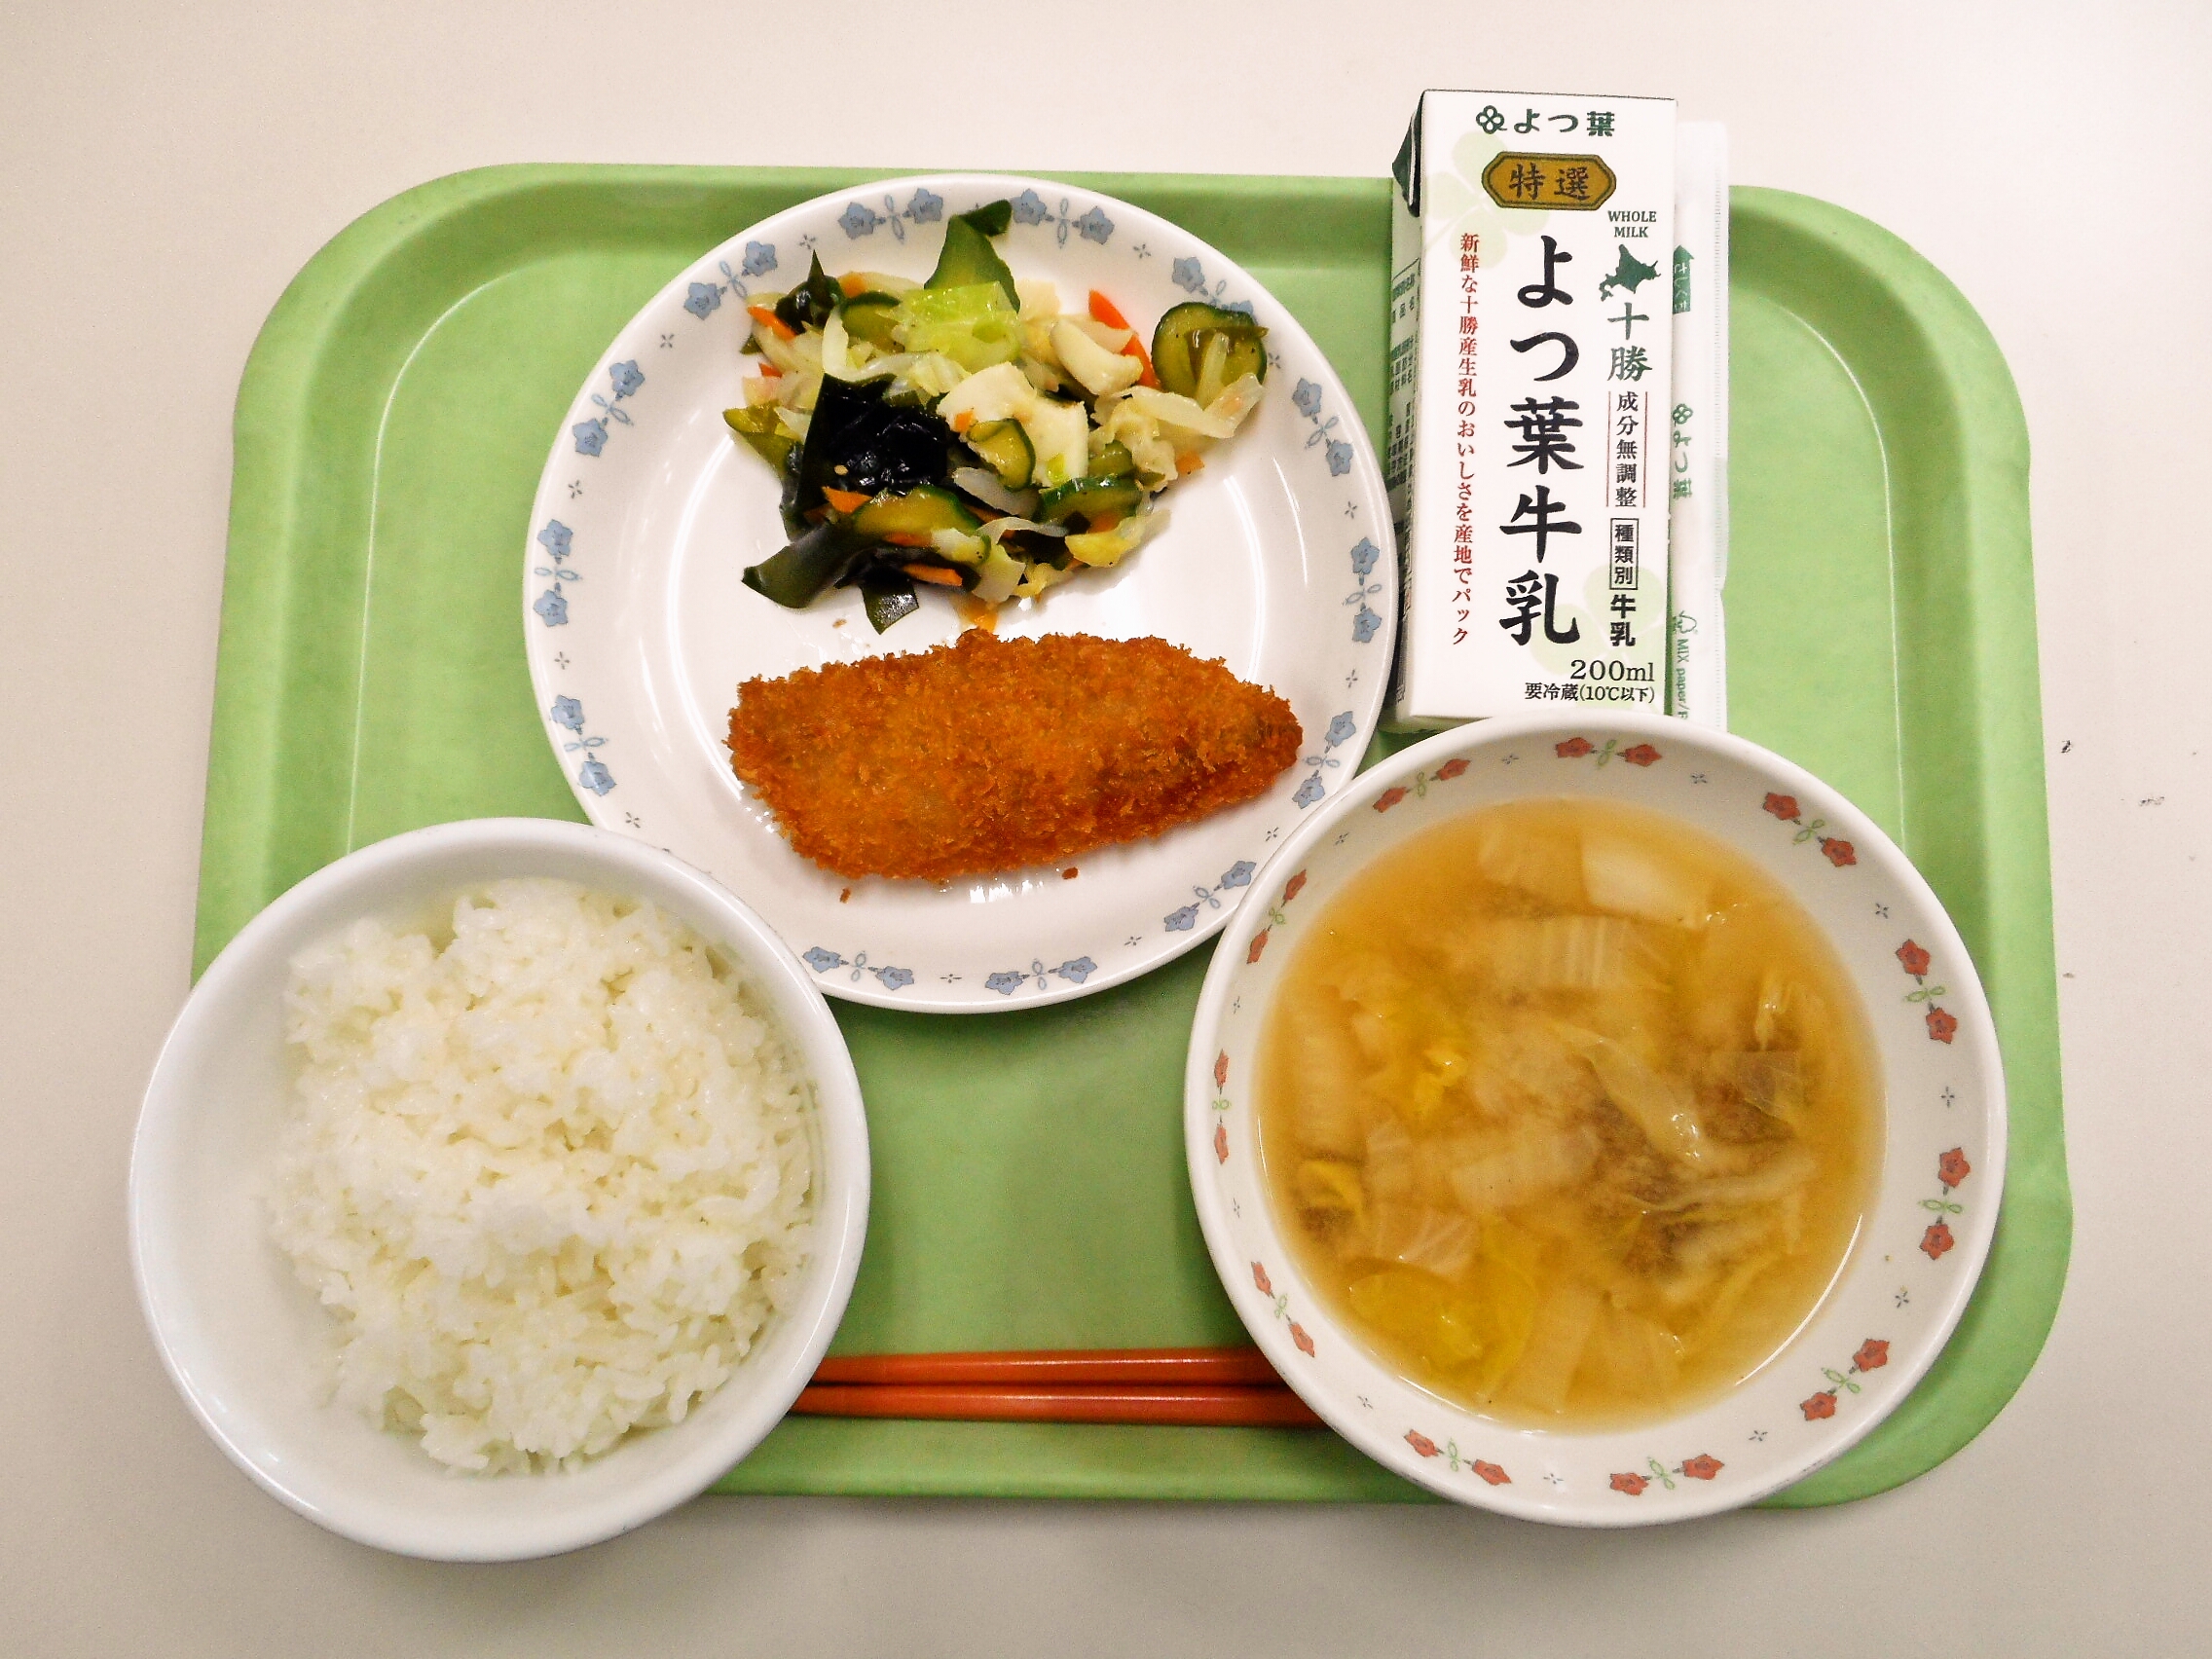 ごはん、みそ汁（白菜・なめこ）、白身魚フライ、海鮮サラダ、牛乳